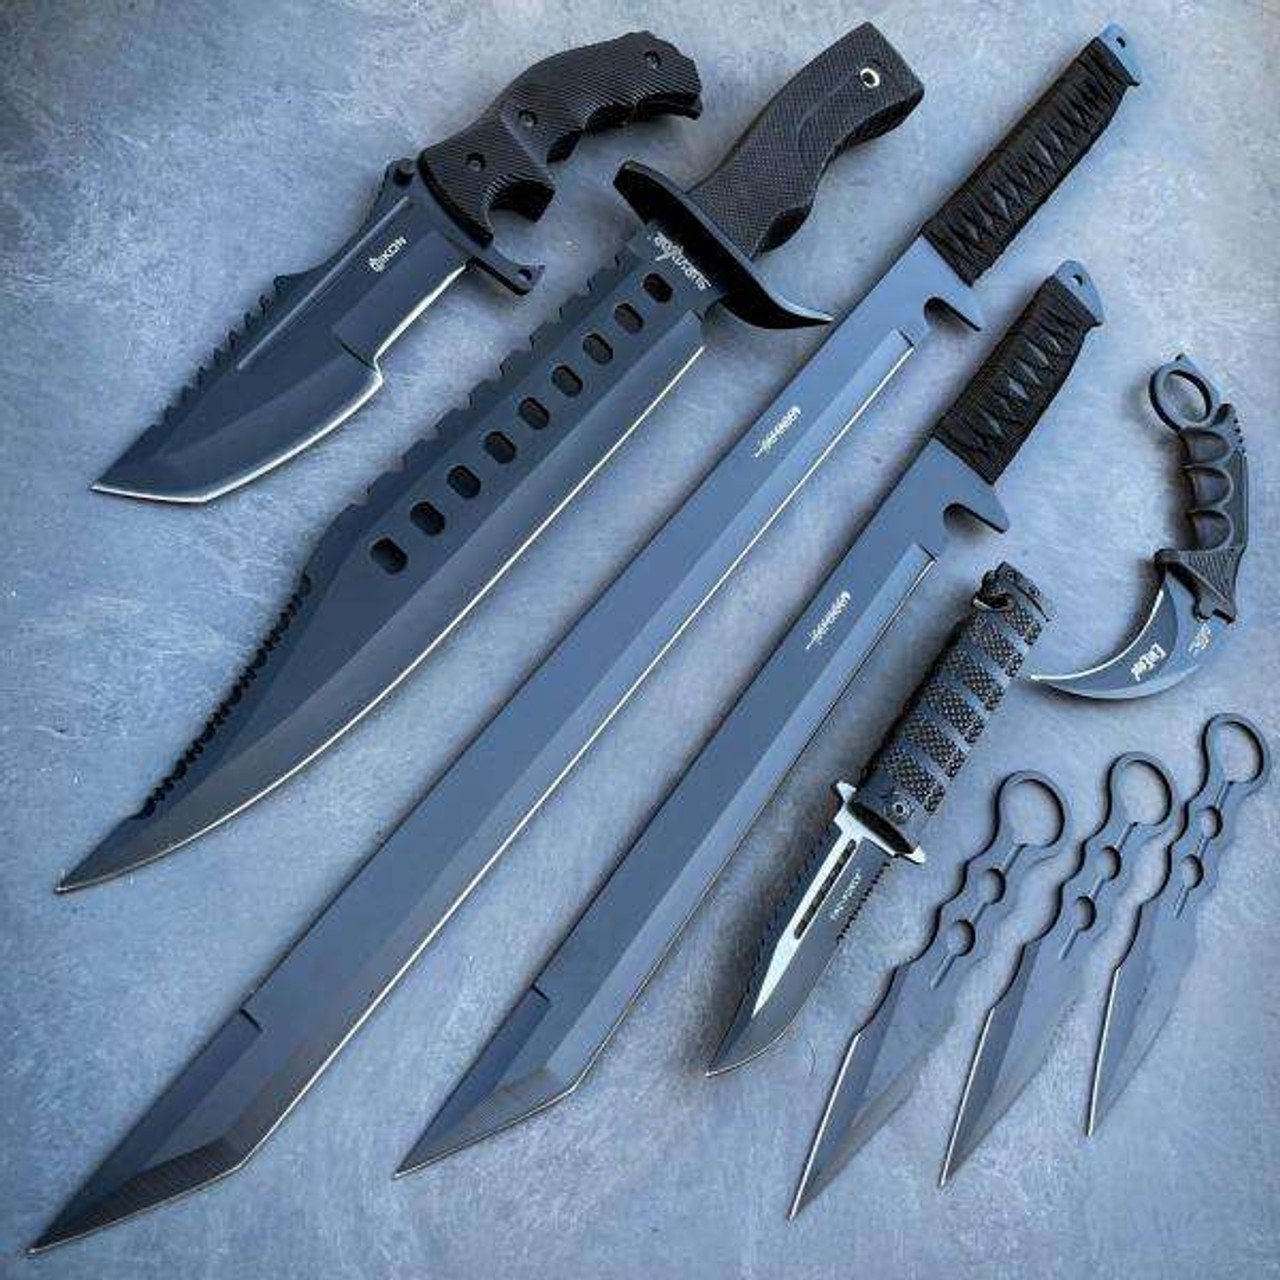 Megaknife Blue Tactical Knife Set 